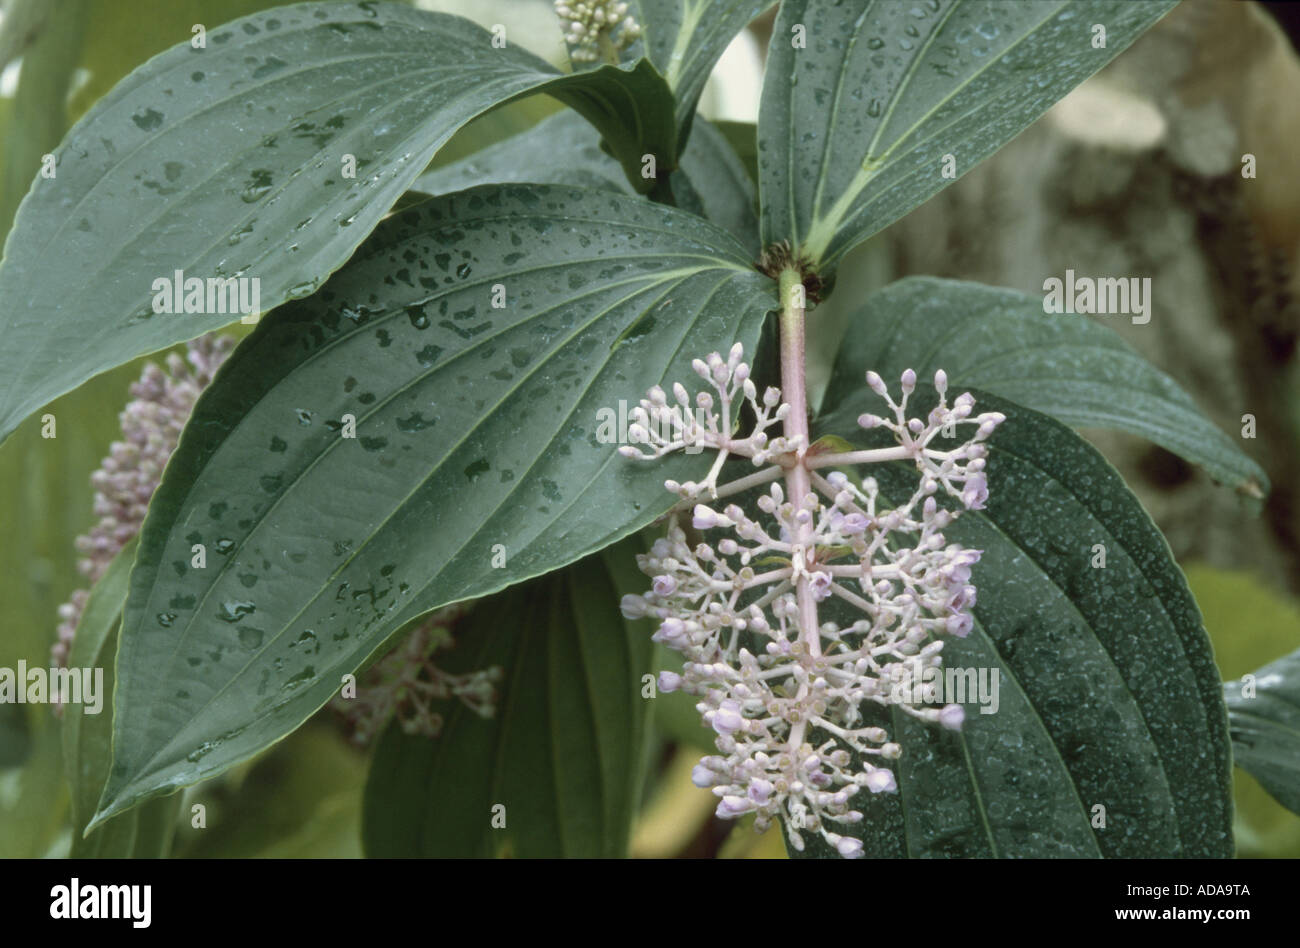 medinilla (Medinilla cummingii), inflorescence and leaf Stock Photo